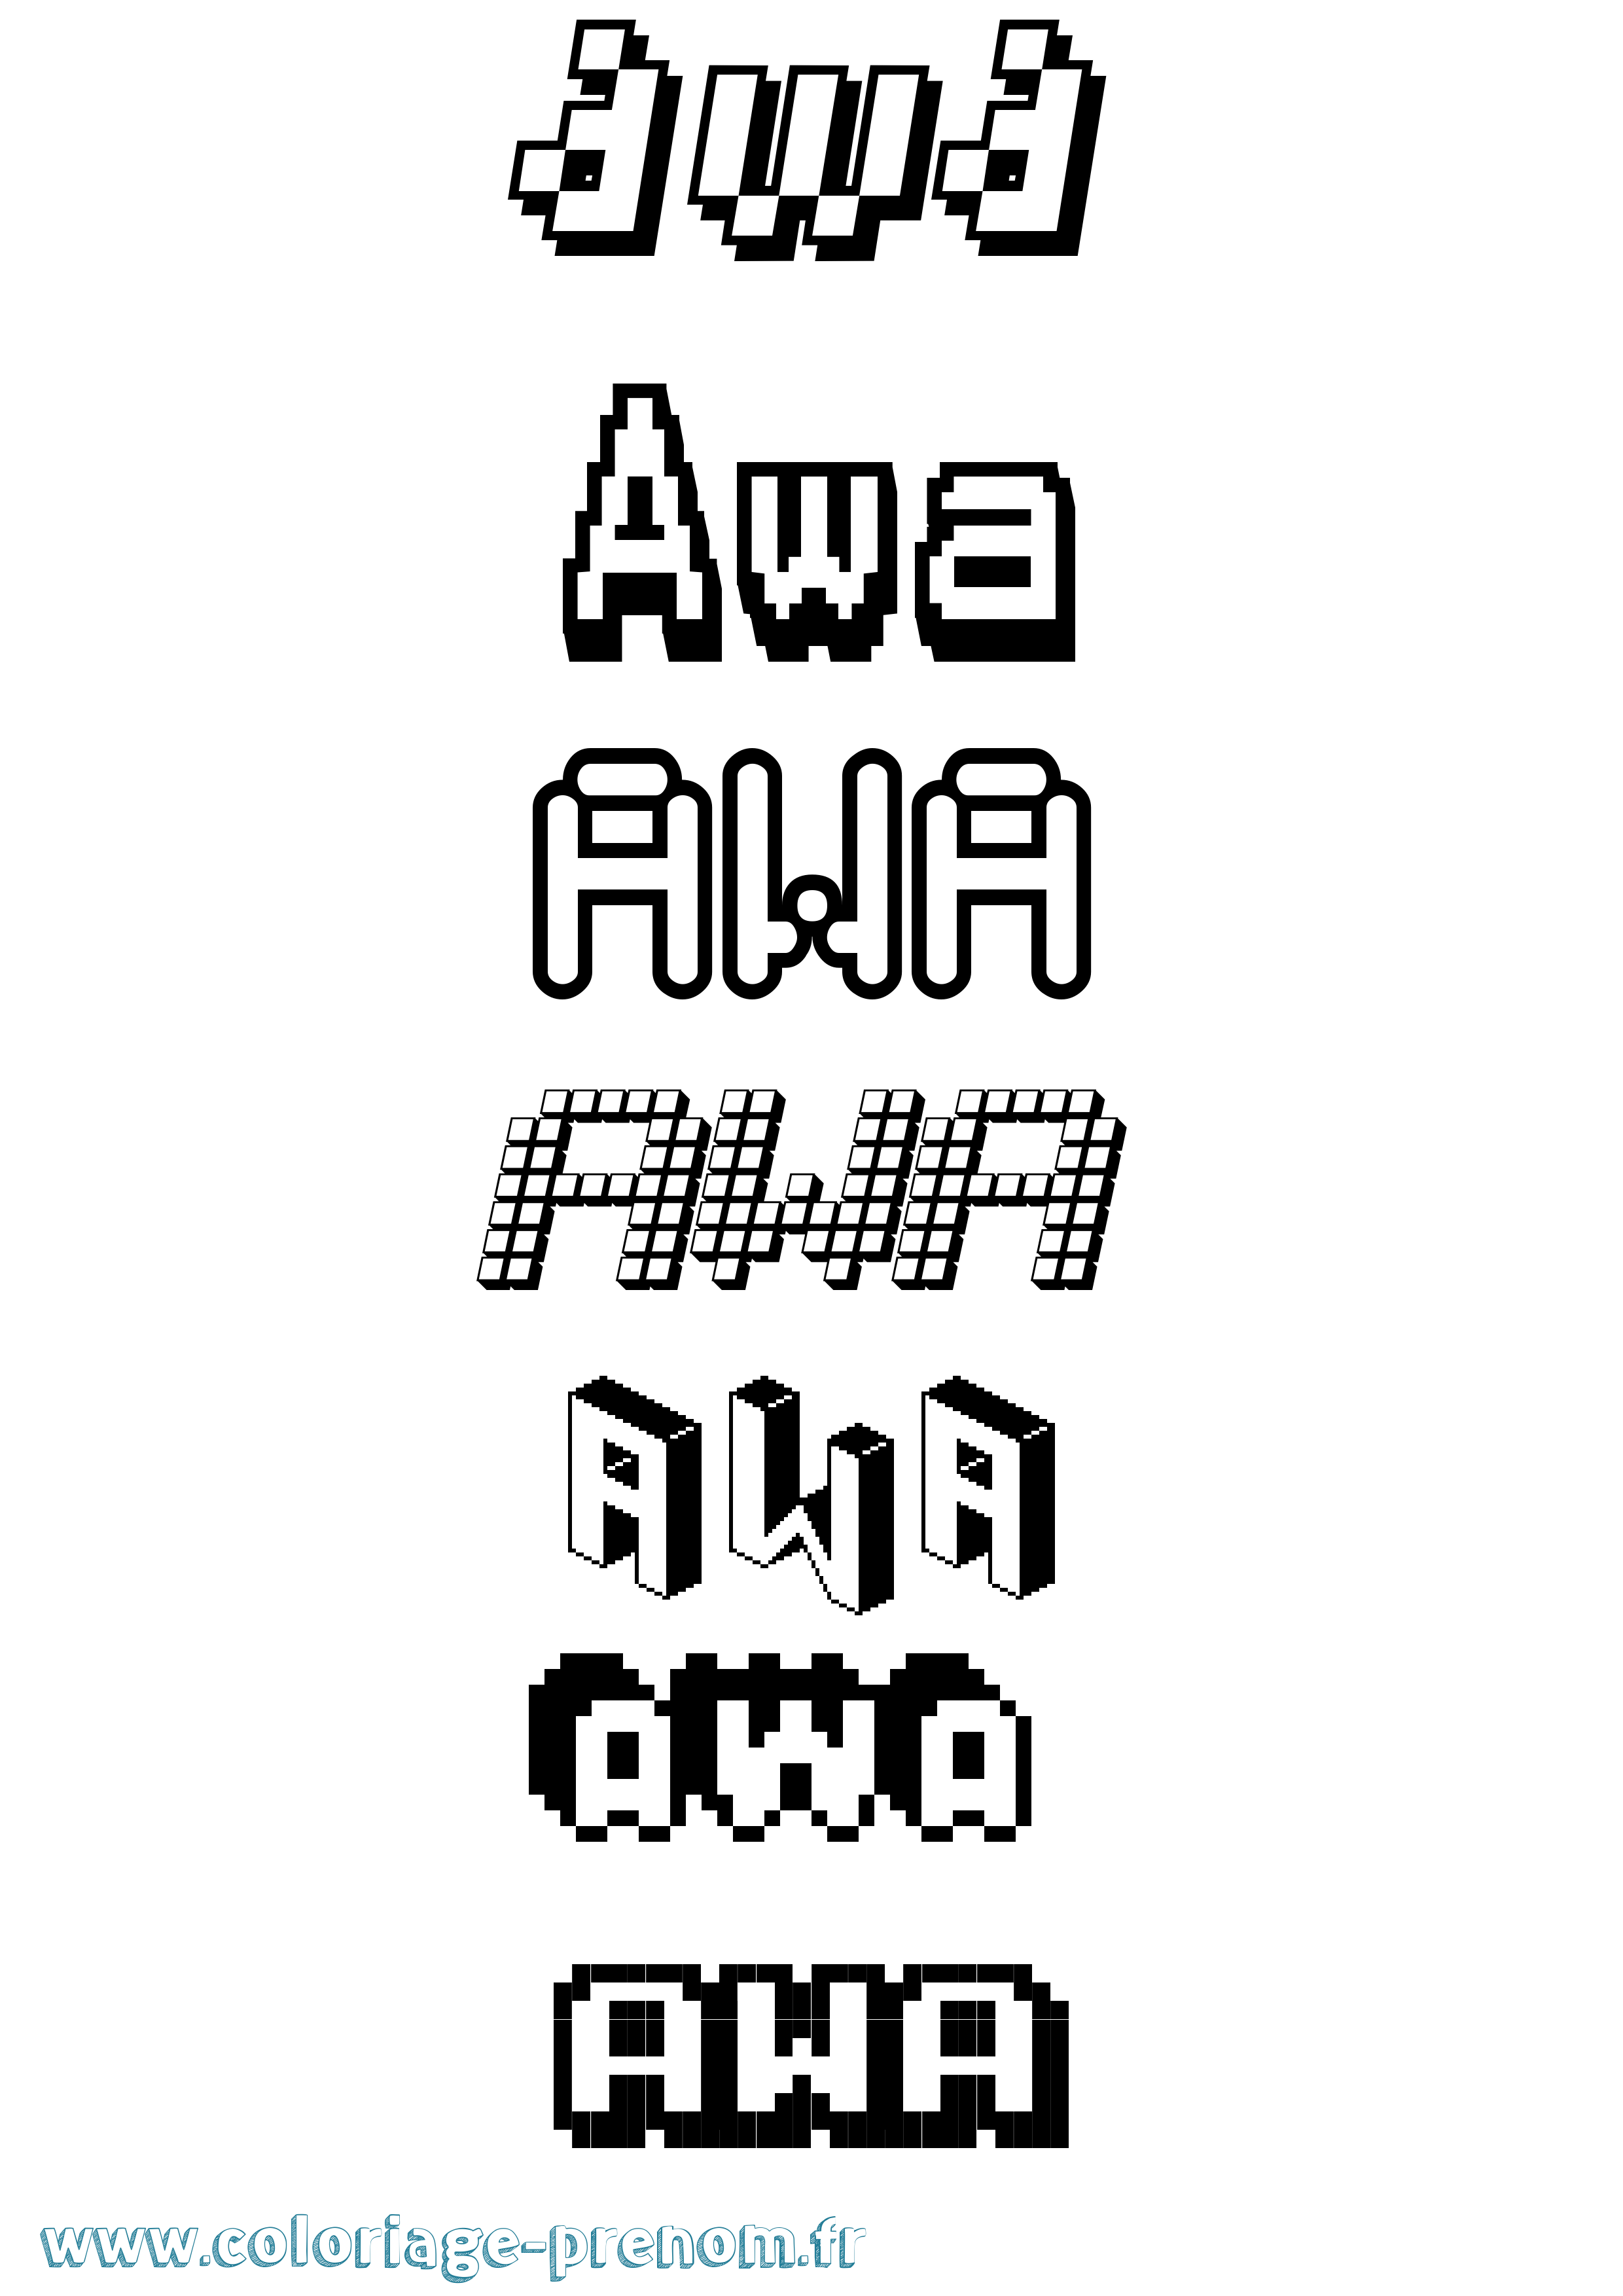 Coloriage prénom Awa